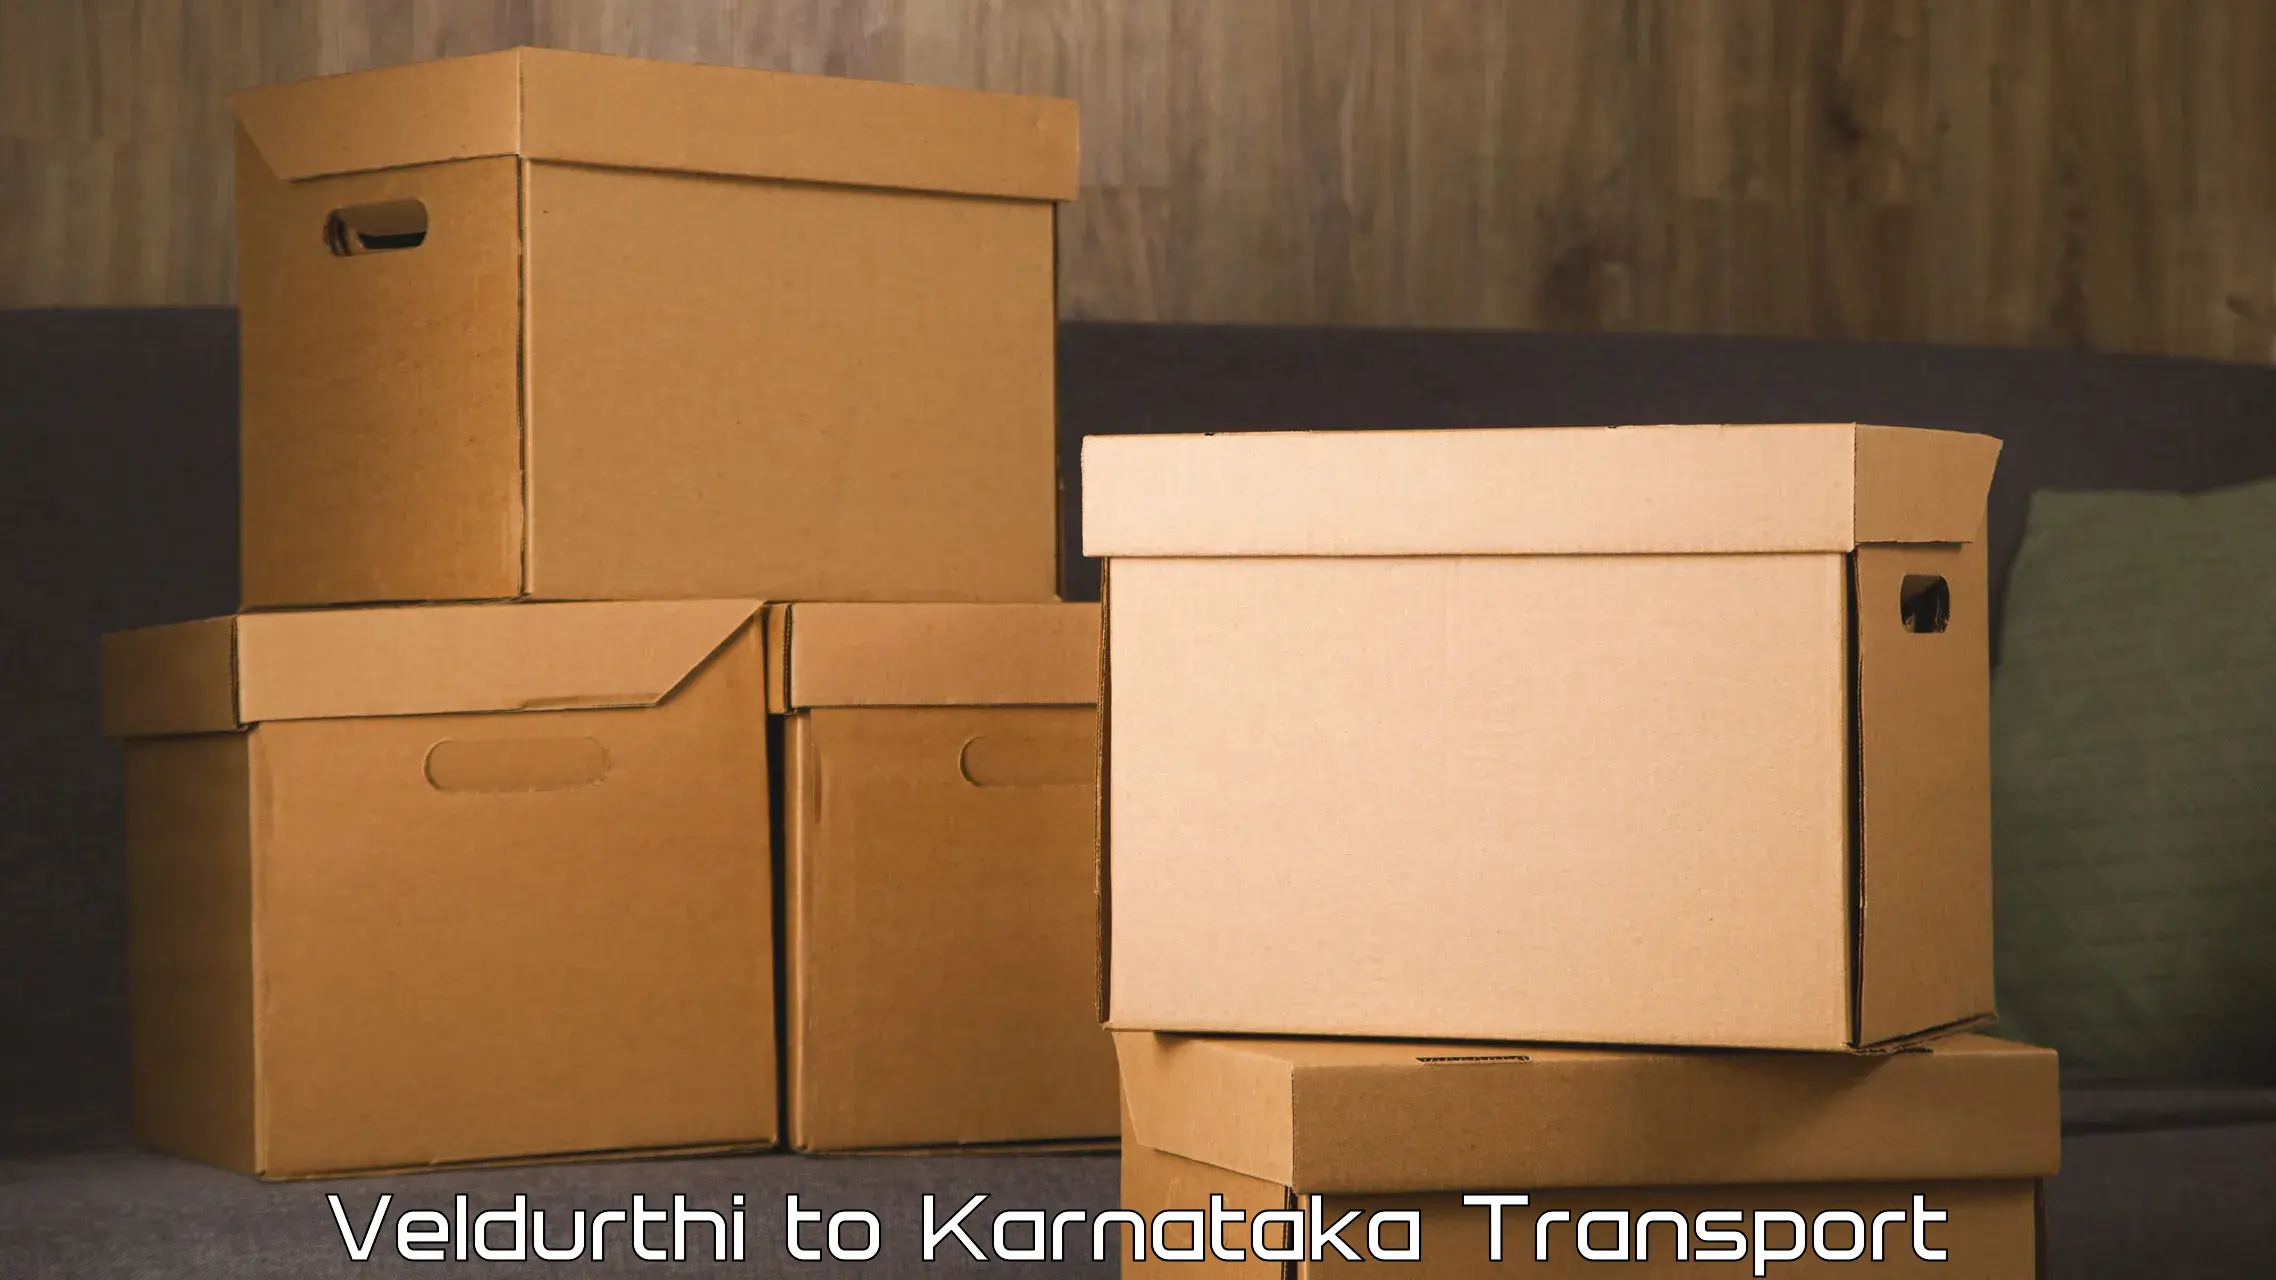 Vehicle transport services Veldurthi to Jayanagar